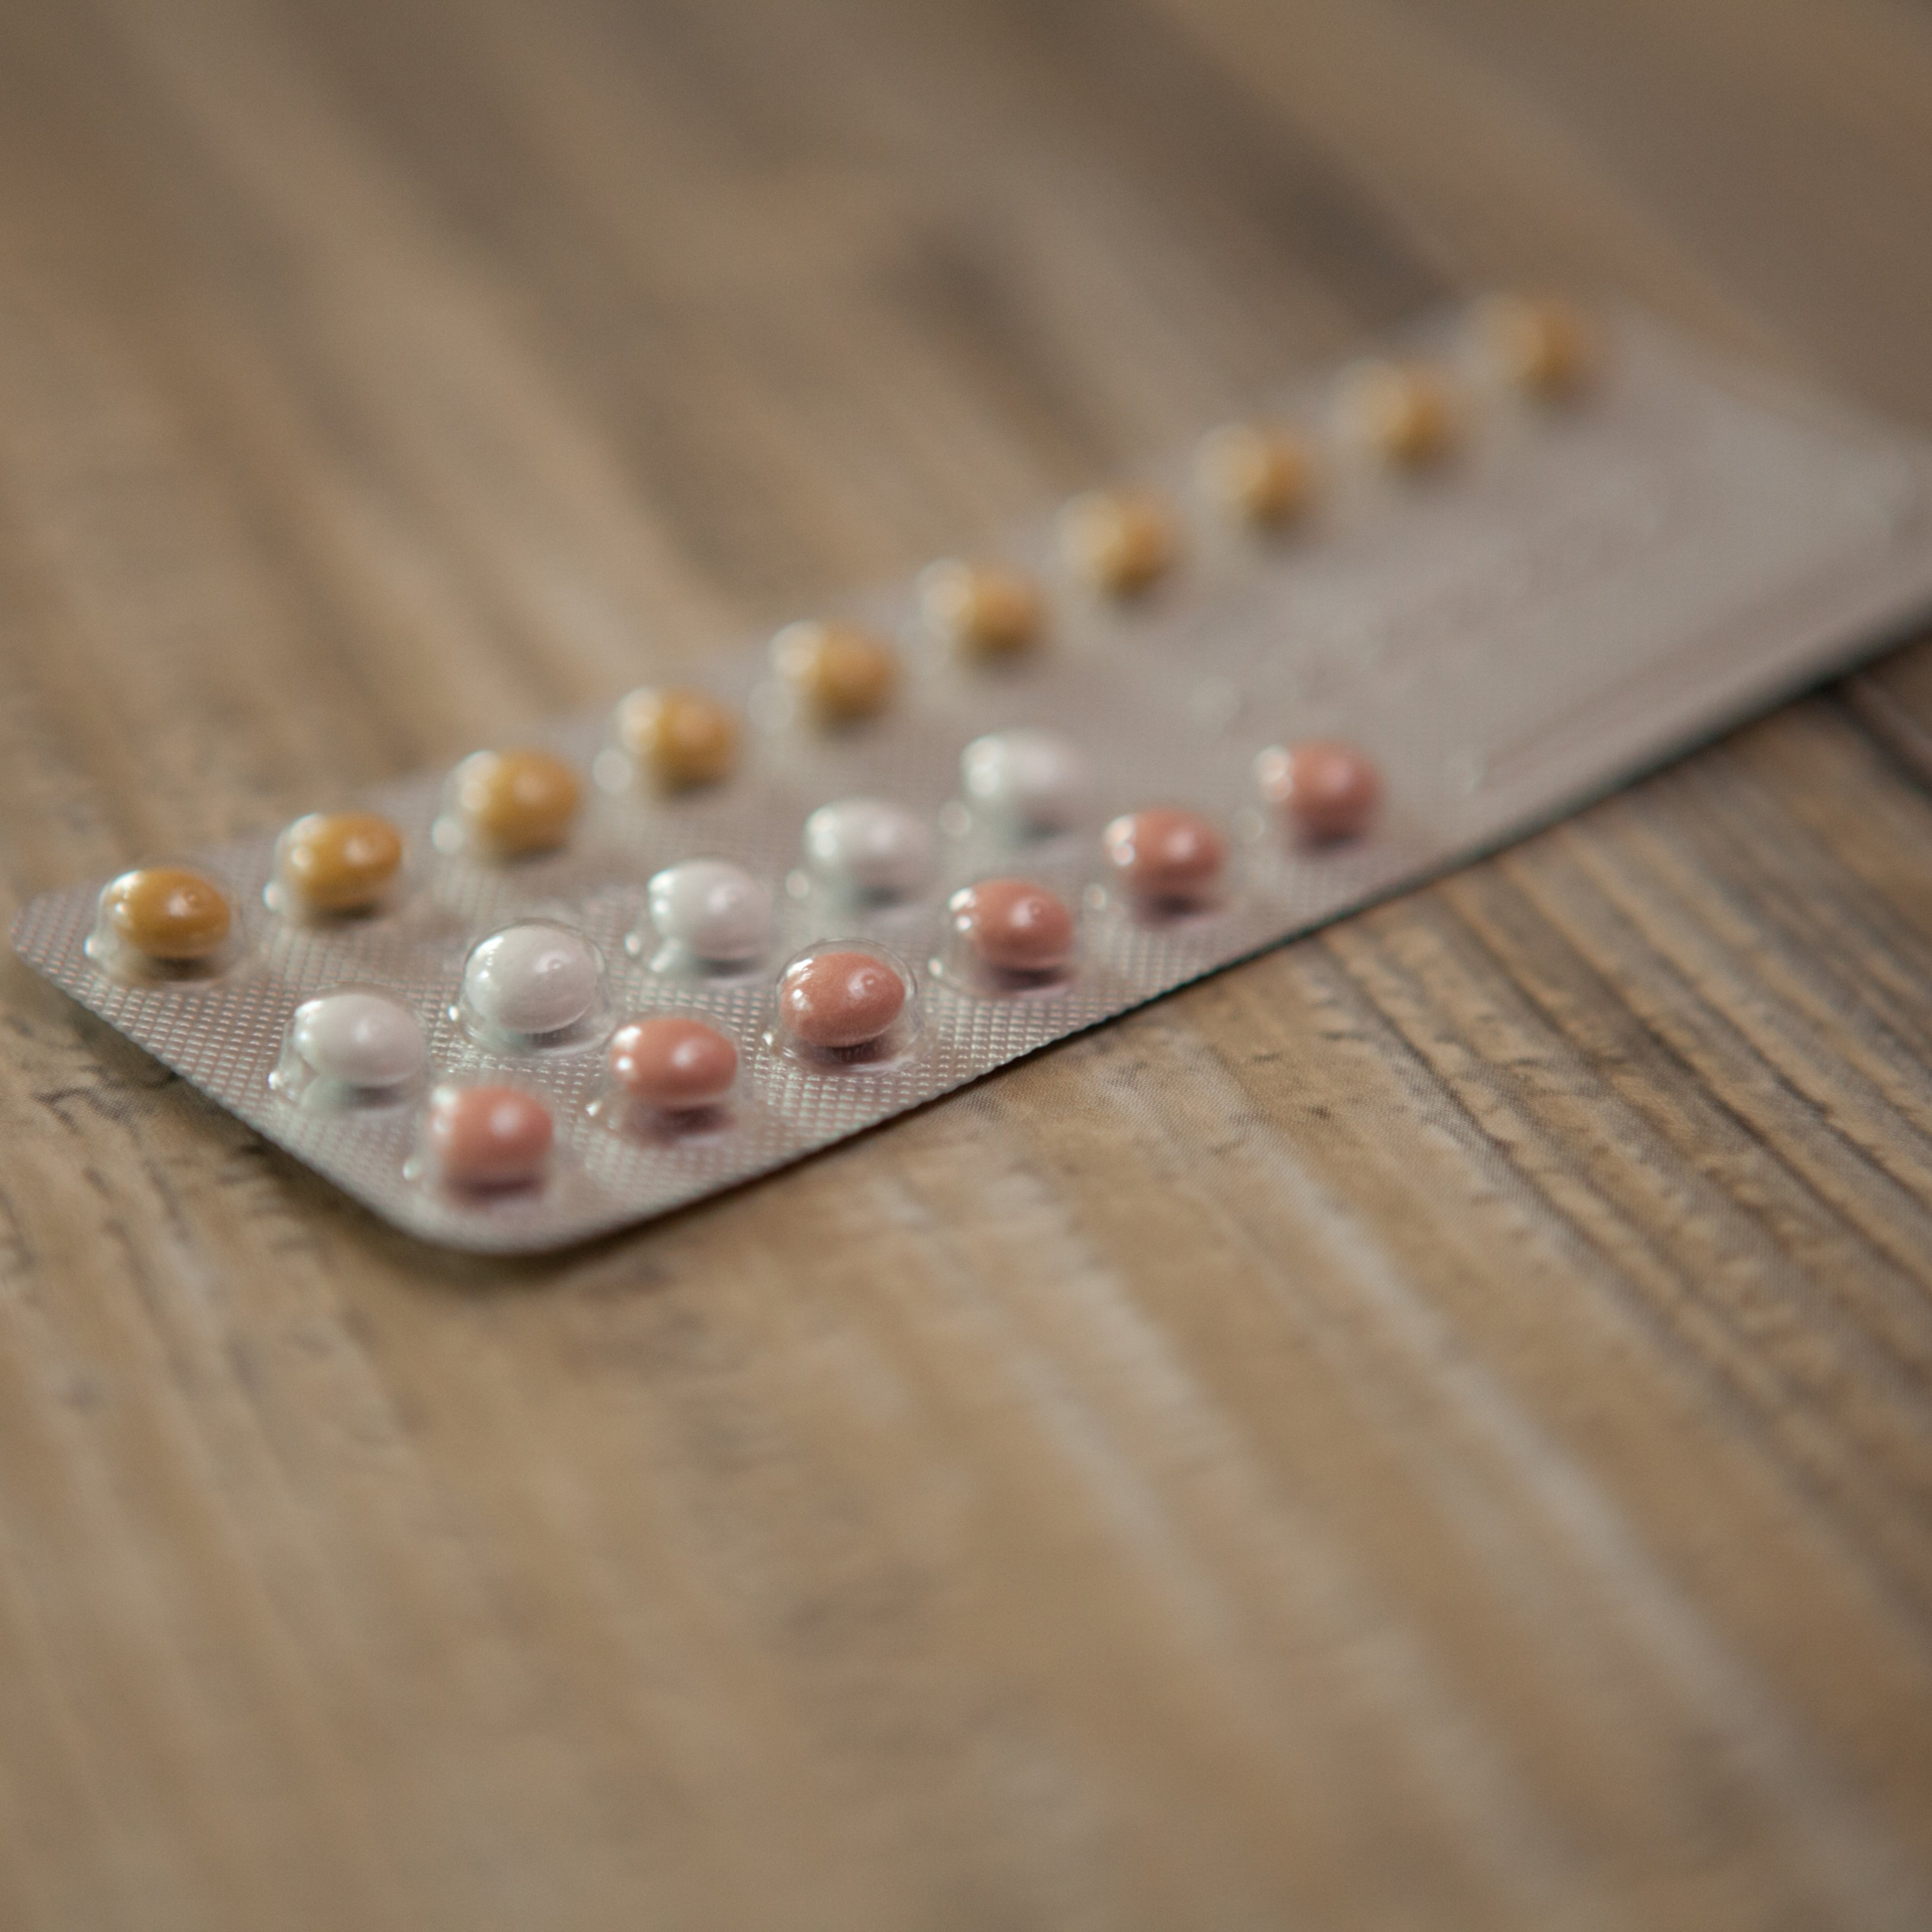 És segur per a les dones de més de 40 anys prendre's la píndola?